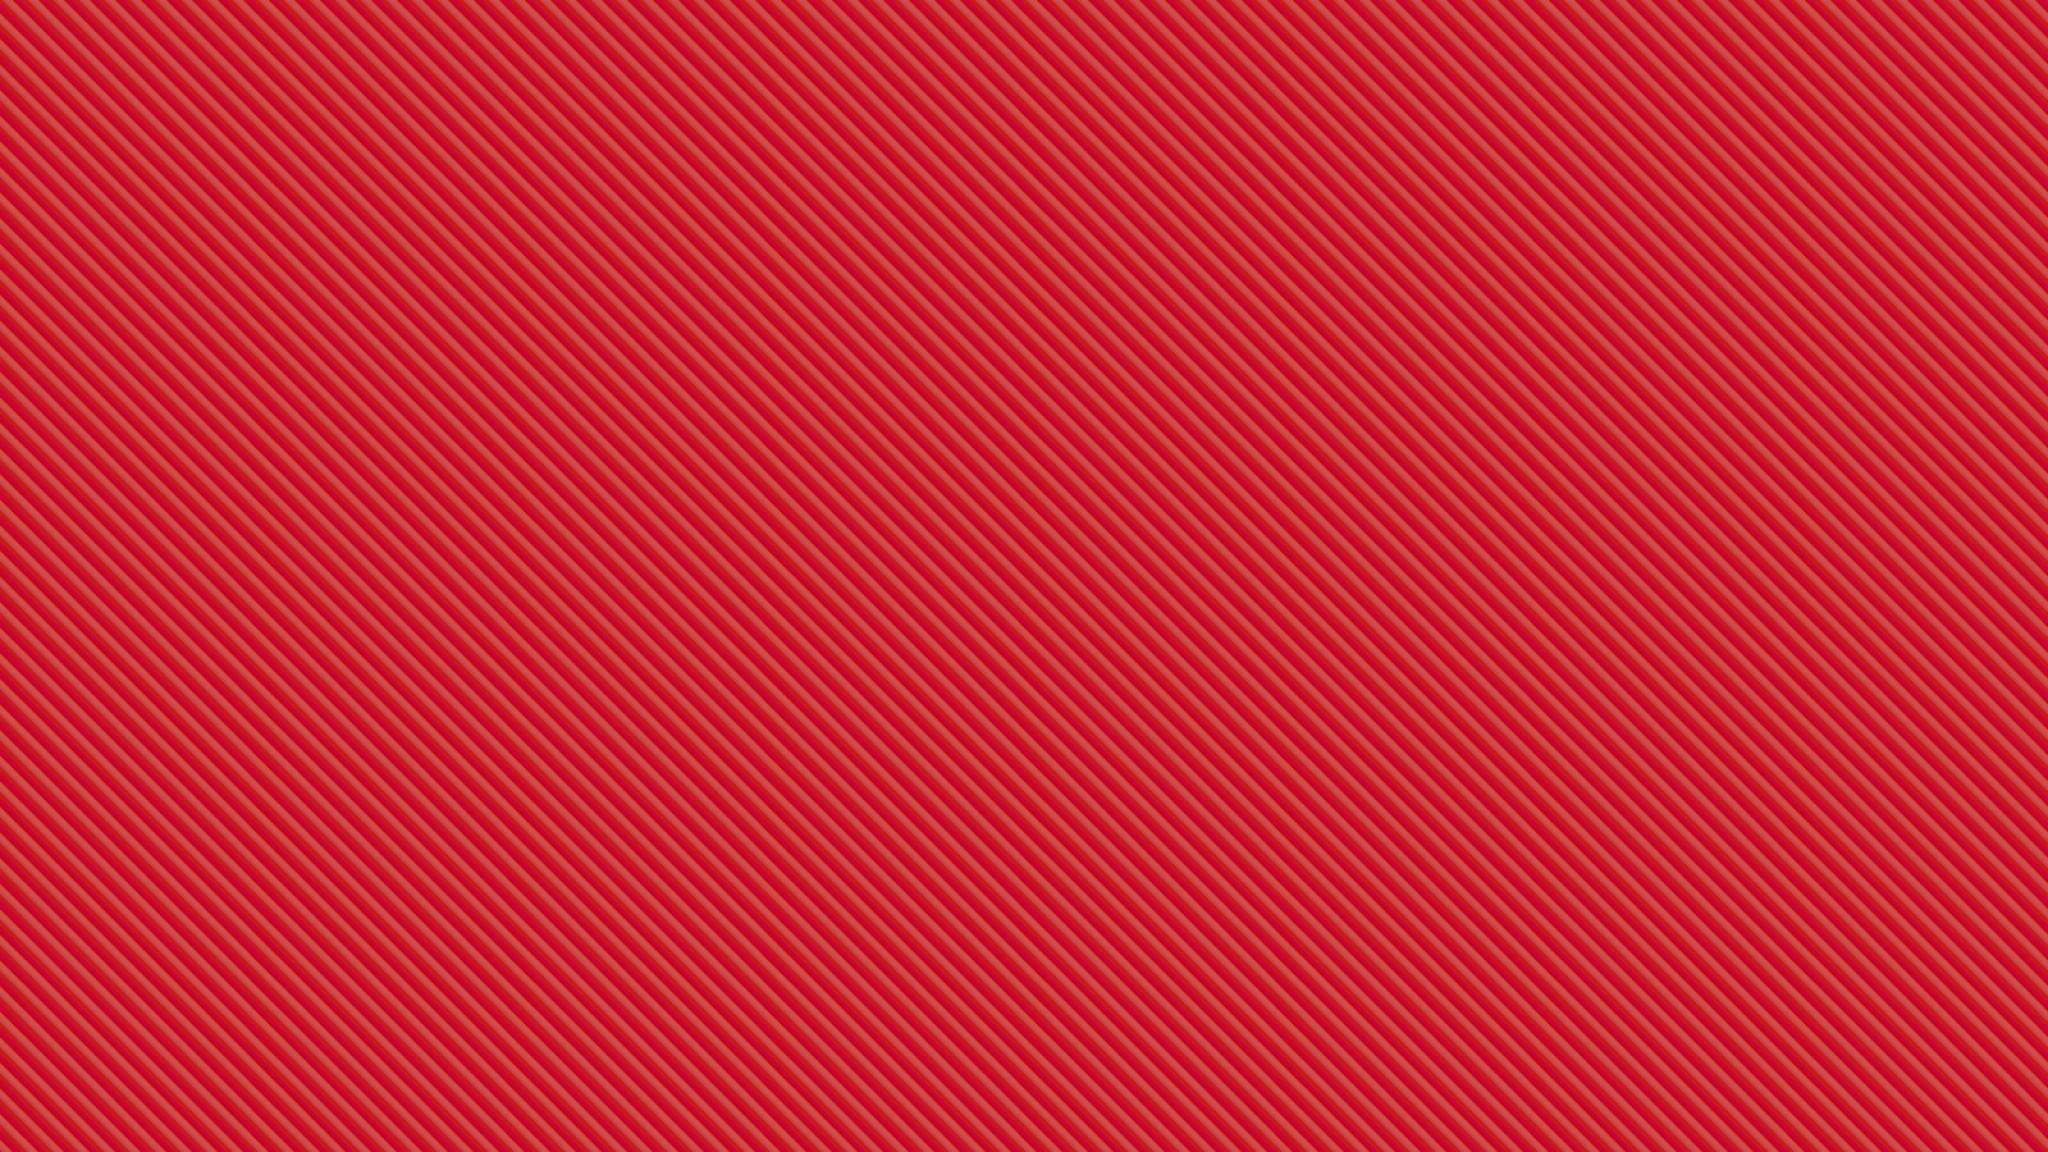 Hình nền đỏ đẹp nhất sẽ mang lại cho bạn một trải nghiệm tuyệt vời và sống động trên màn hình của bạn. Với sự kết hợp hoàn hảo của màu đỏ và các họa tiết tinh tế, hình nền đỏ đẹp nhất sẽ tăng thêm sự sang trọng và đẳng cấp cho thiết bị của bạn.